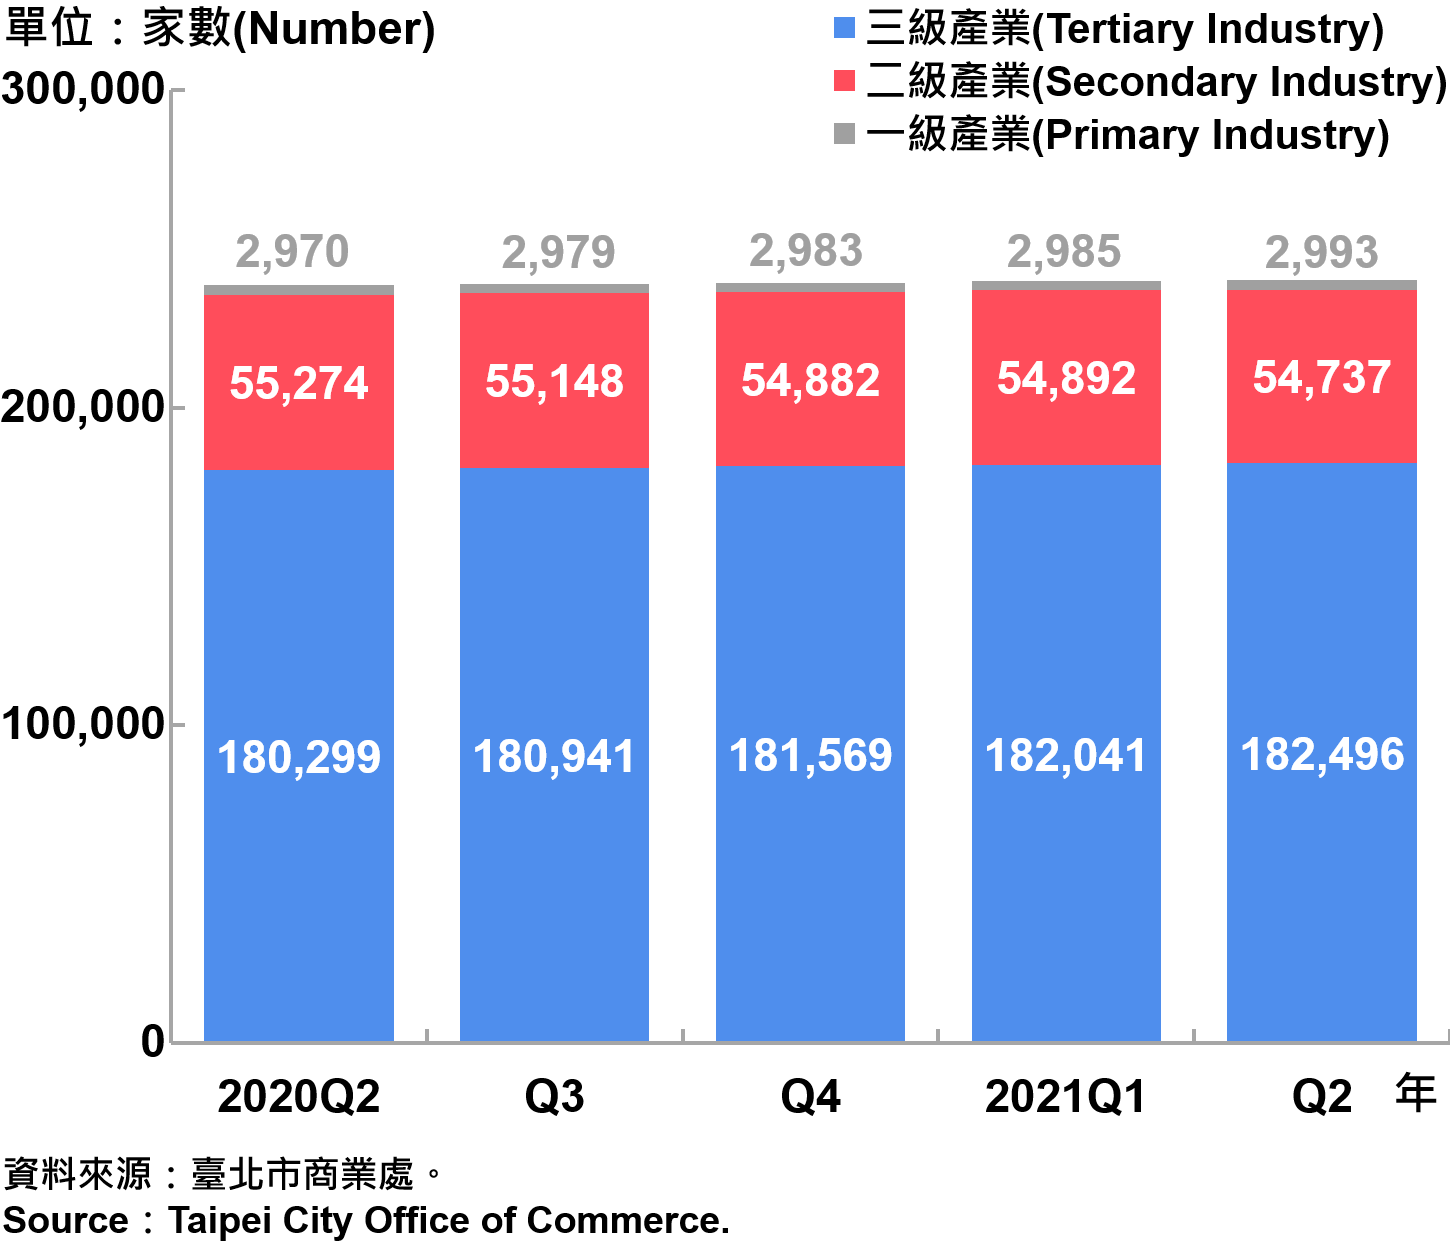 臺北市一二三級產業登記家數—2021Q2 Number of Primary , Secondary and Tertiary Industry in Taipei City—2021Q2